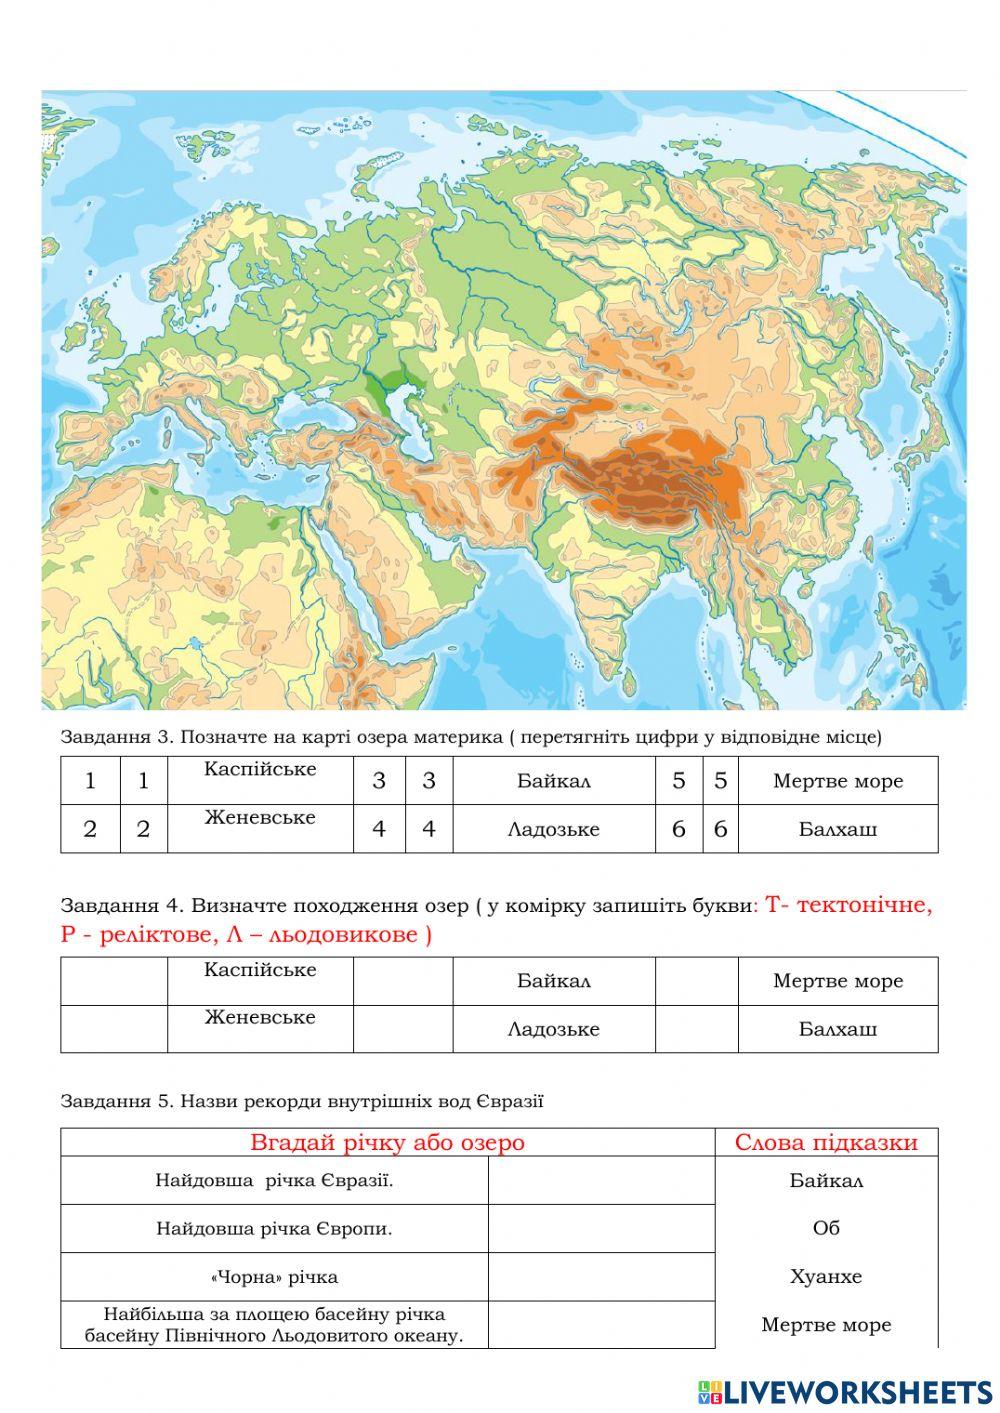 Практична робота № 10 Позначення на контурній карті назв географічних об’єктів Євразії  (річки, озера)